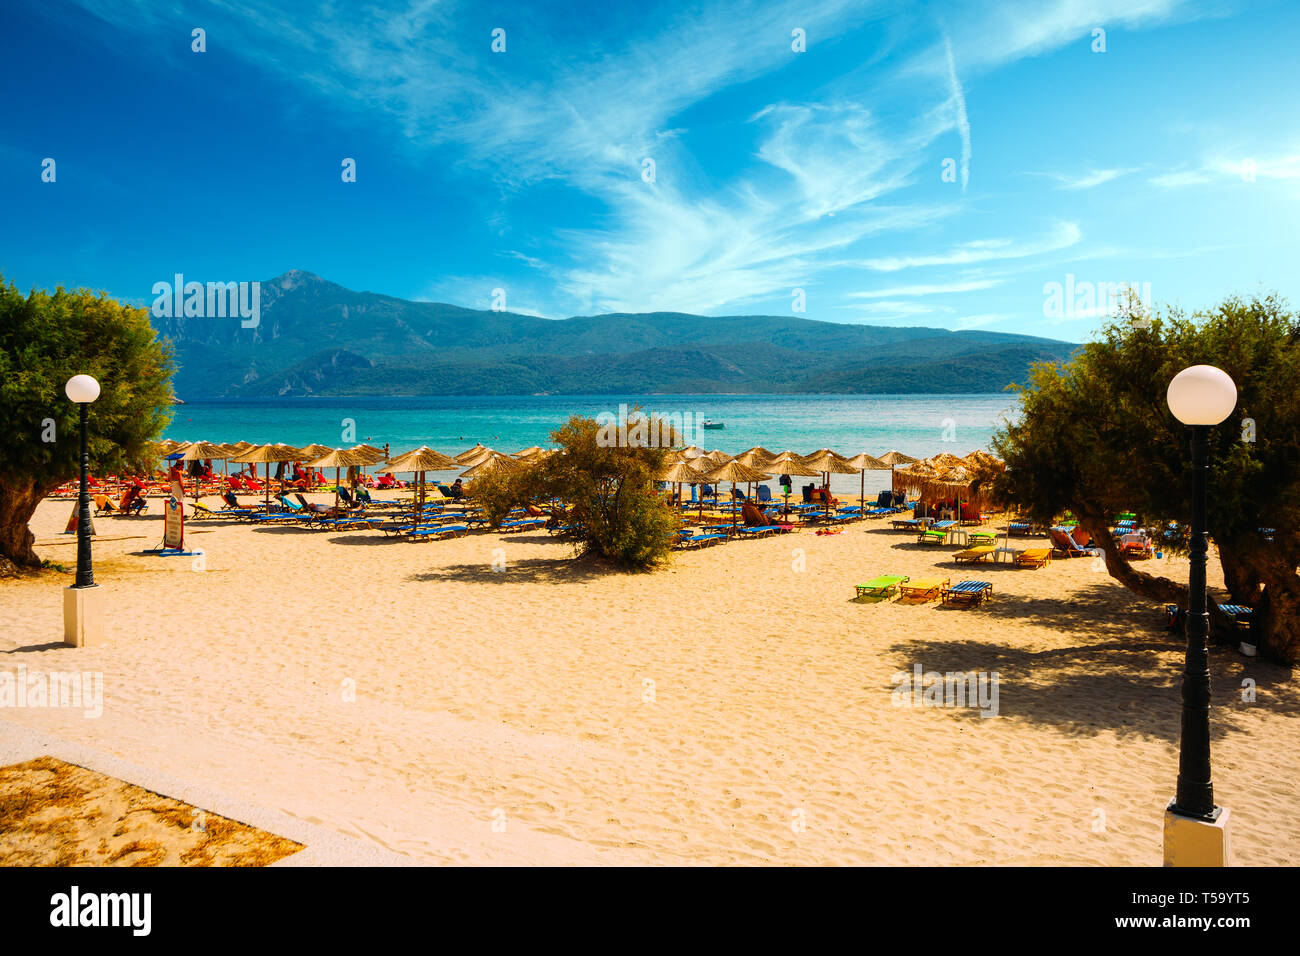 Die Insel Samos, Griechenland - 20. September 2017: schöne Strand Psili Ammos, Touristen genießen einen schönen Sommertag auf der Insel Samos in Griechenland Stockfoto